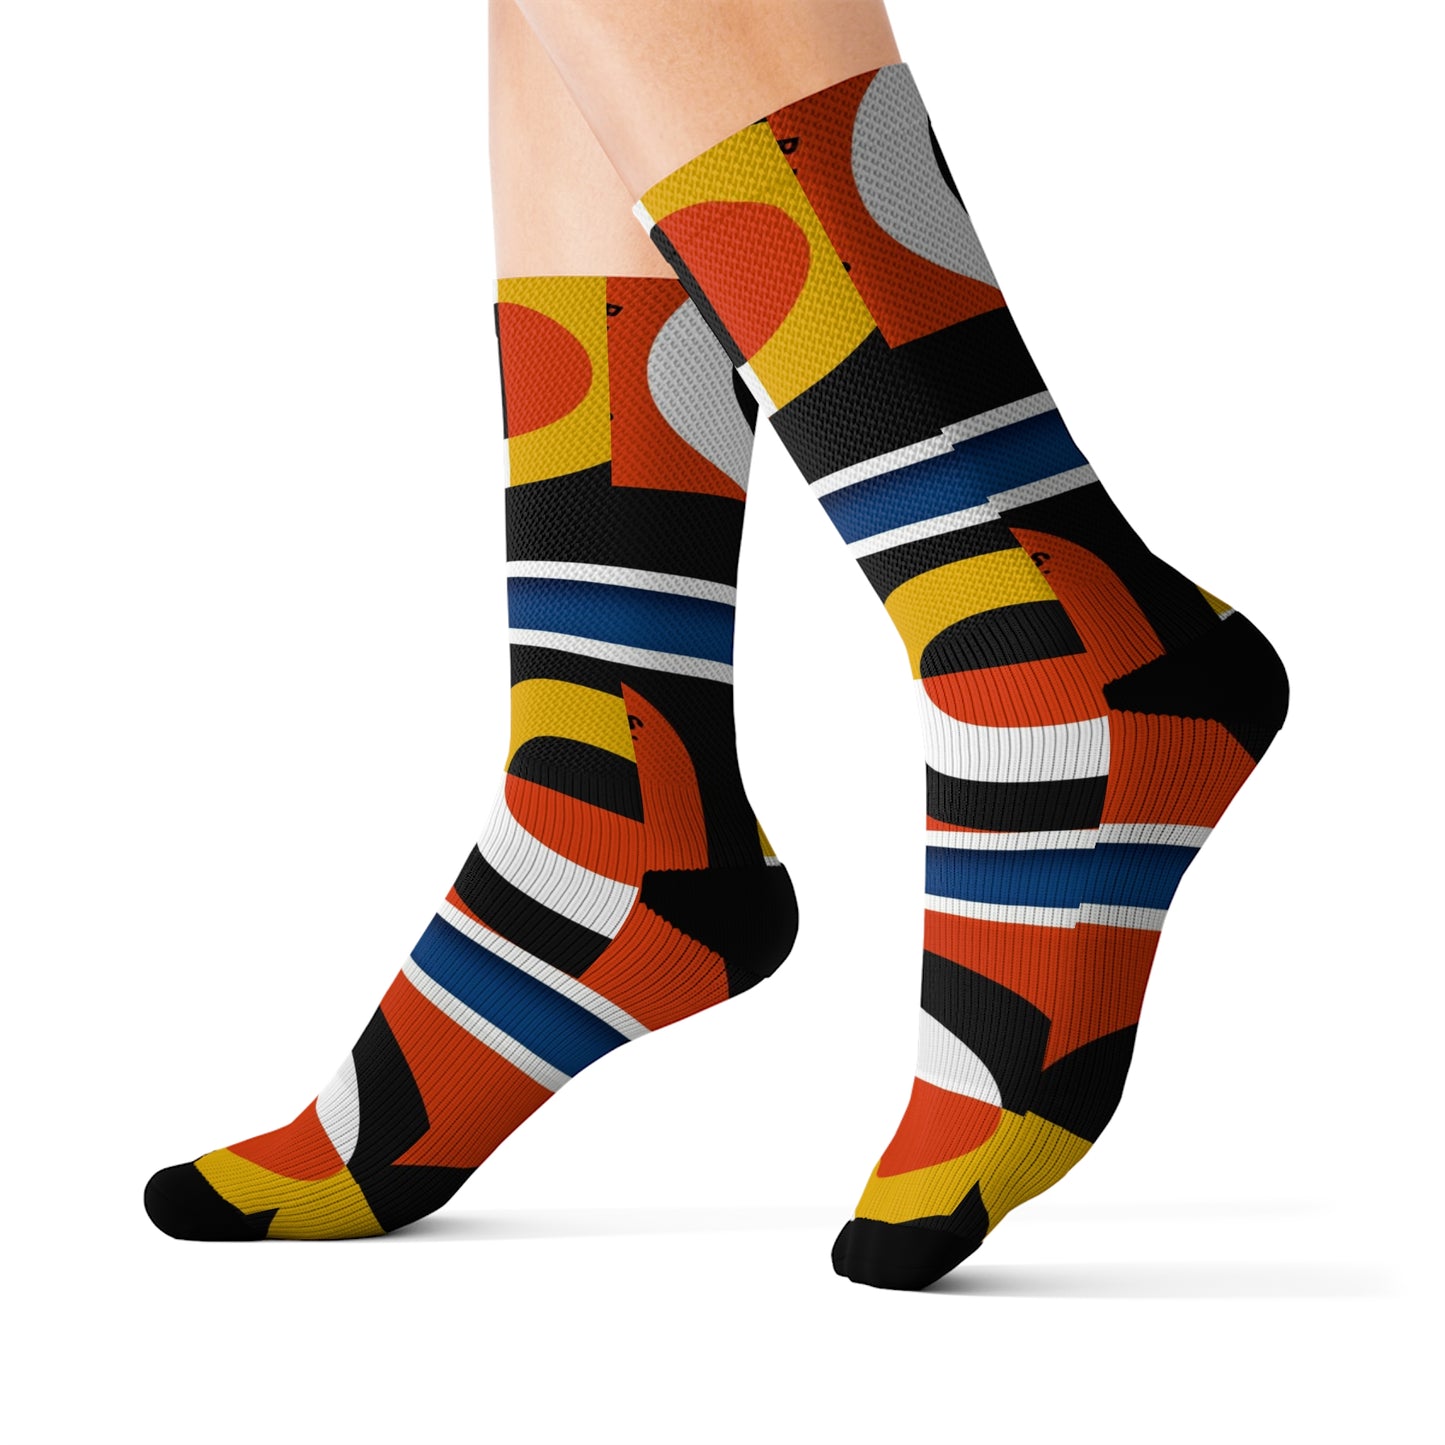 Bauhaus Socks